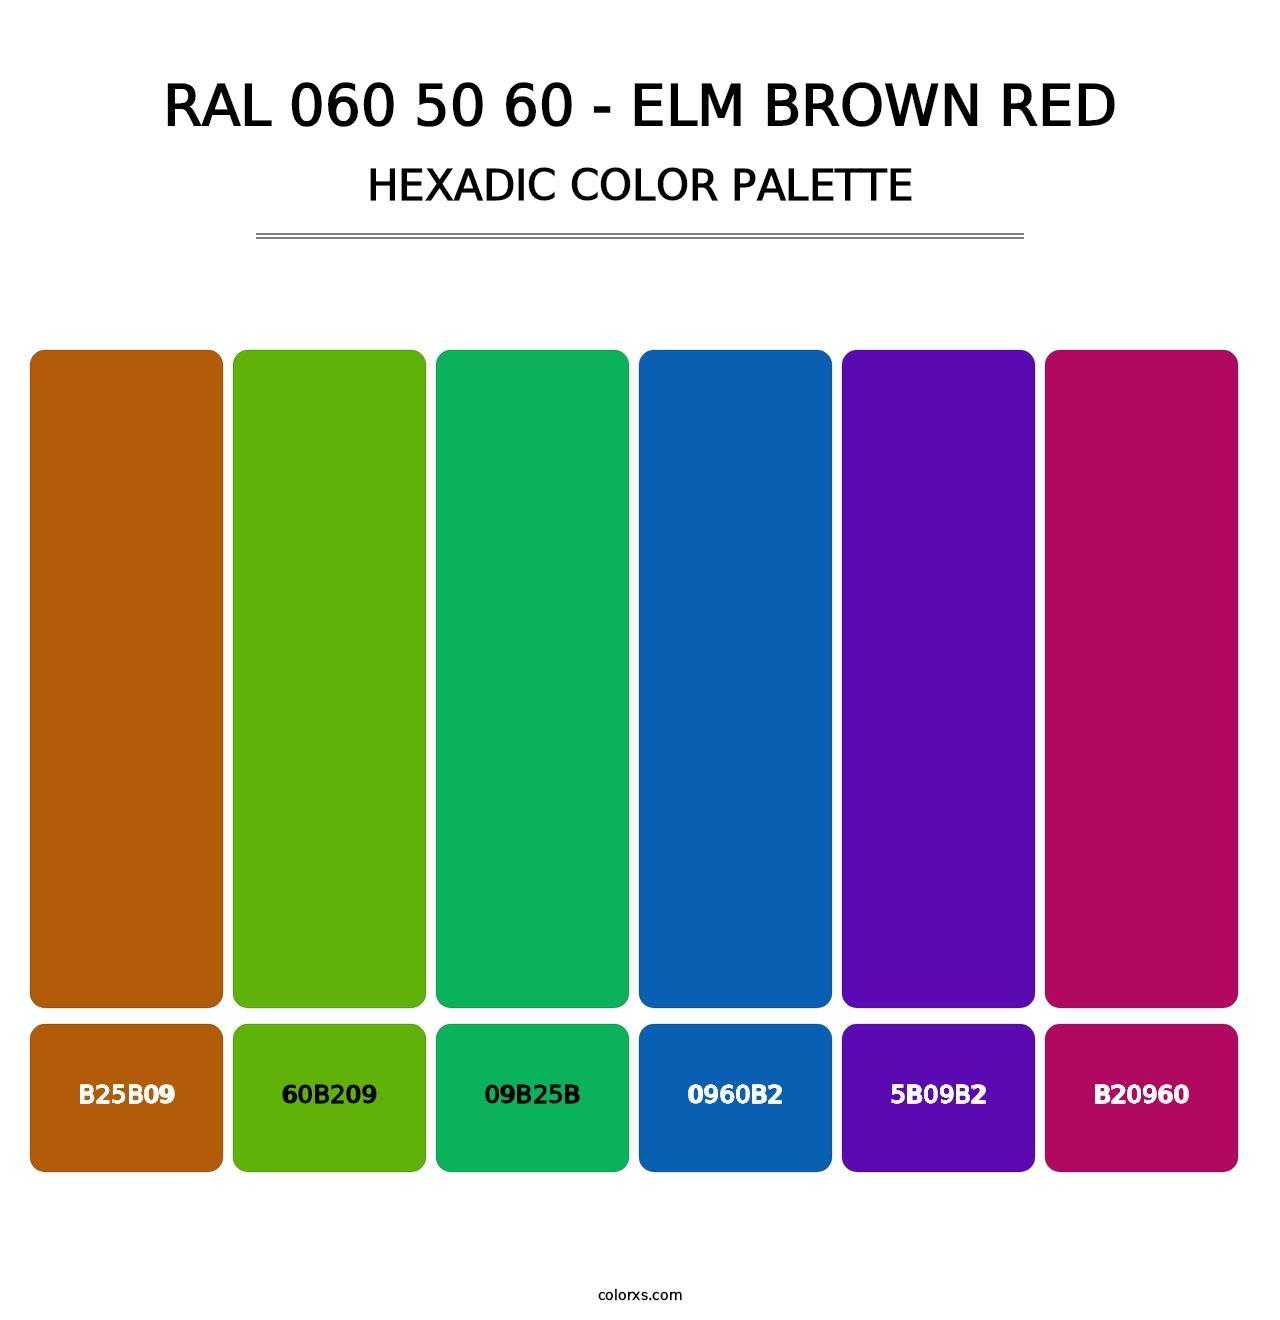 RAL 060 50 60 - Elm Brown Red - Hexadic Color Palette